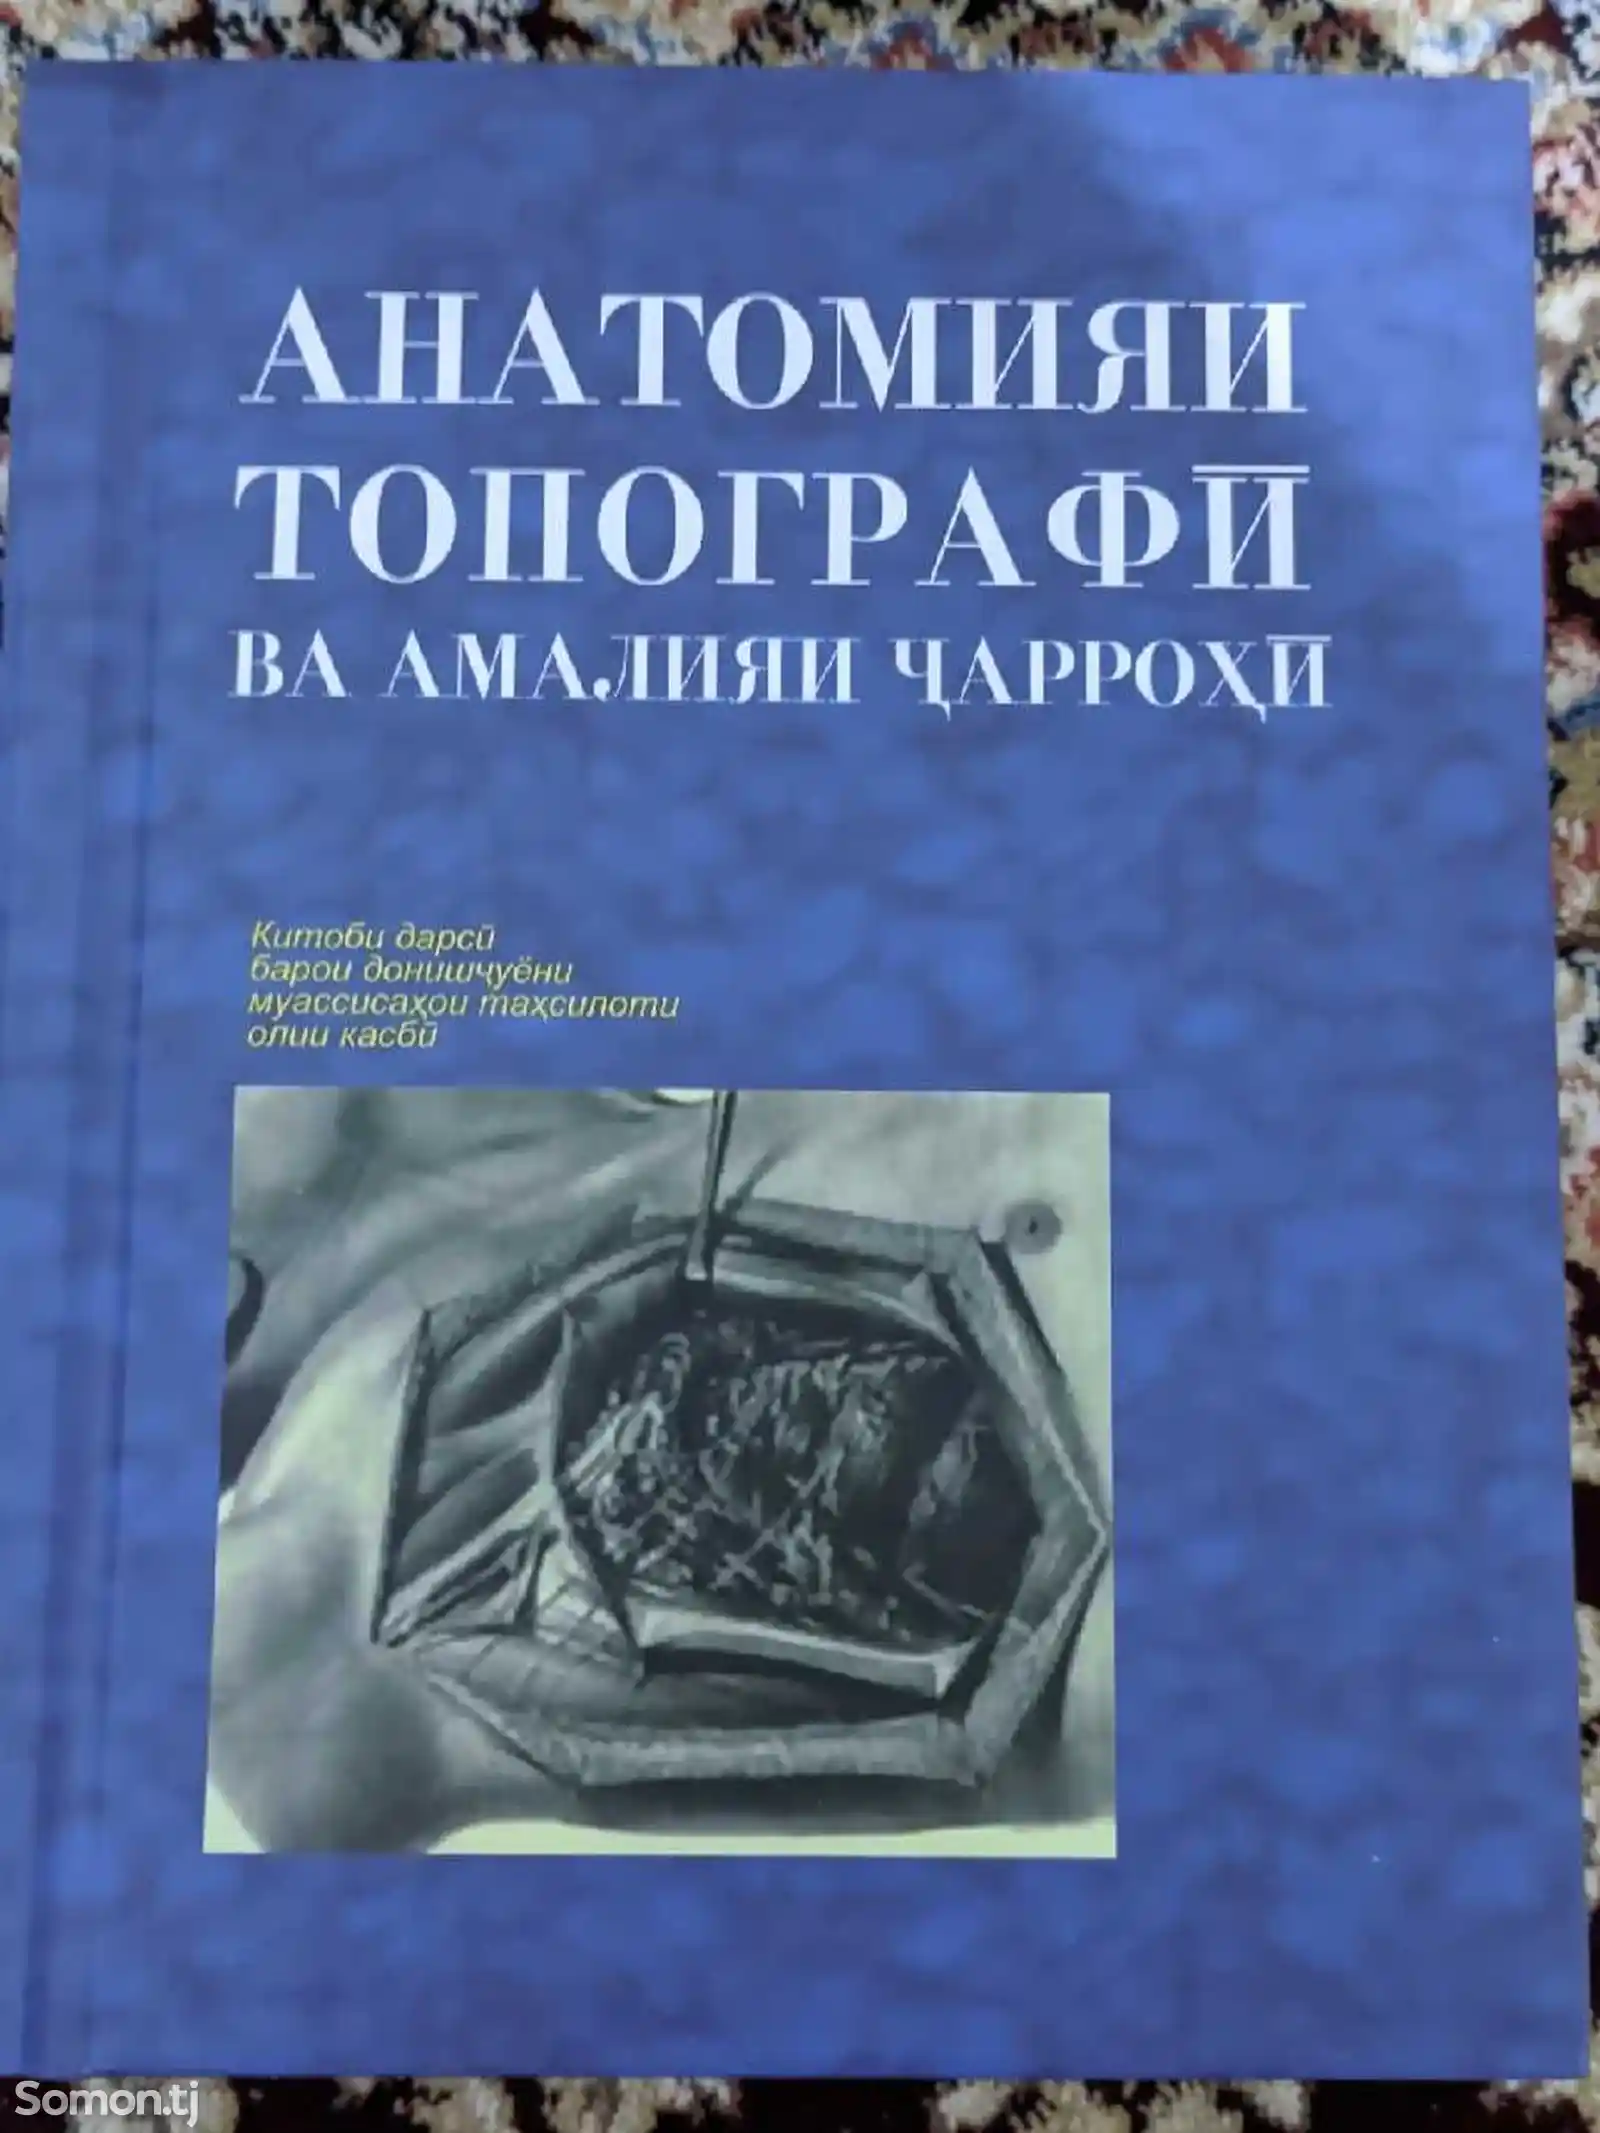 Книга-АНАТОМИЯИ ТОПОГРАФЙ ВА АМАЛИЯИ ЧАРРОҲИ-1